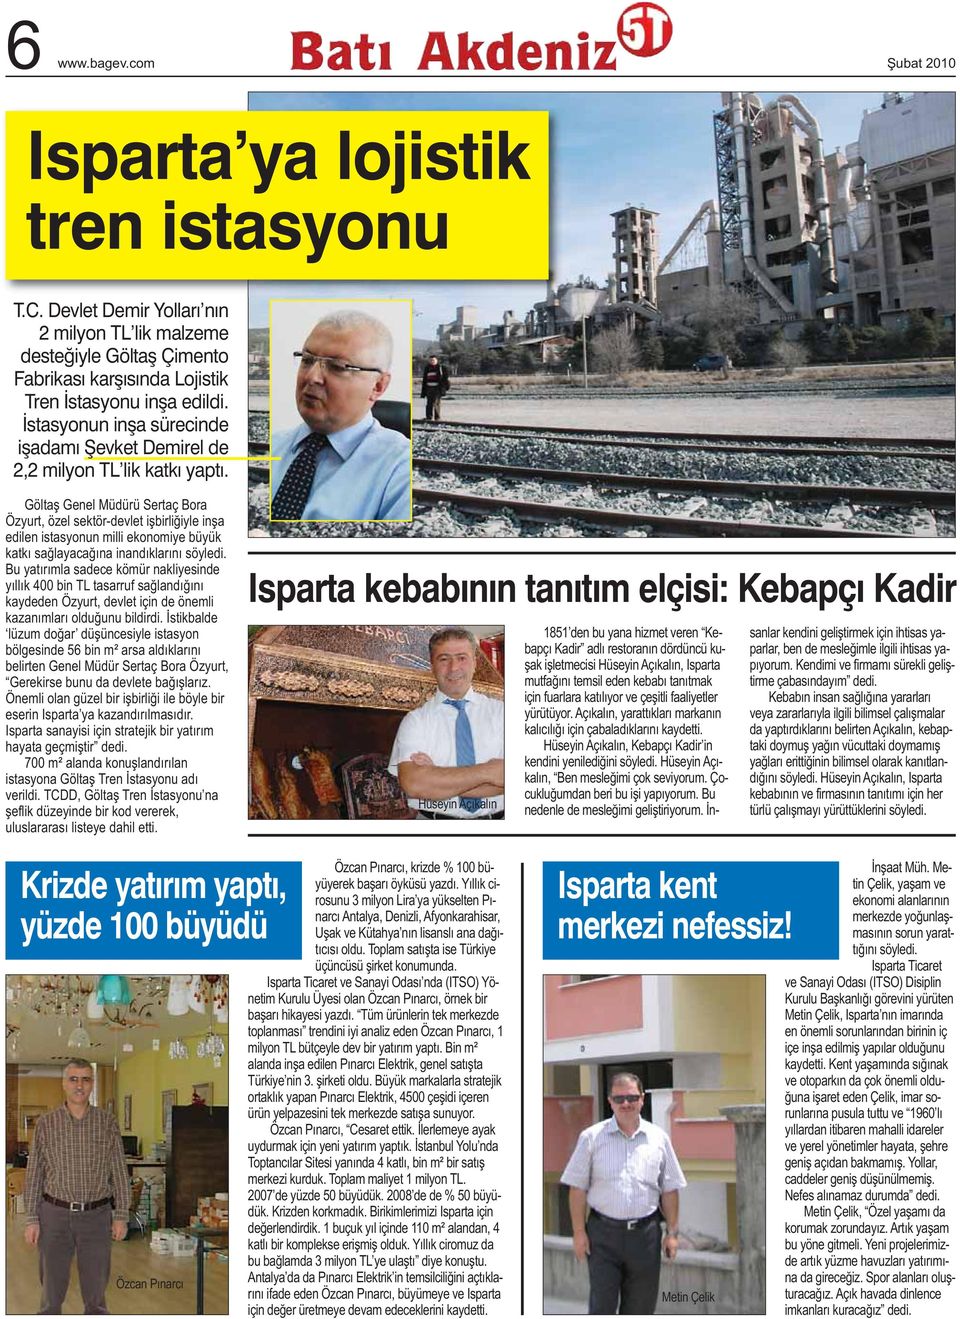 Göltaş Genel Müdürü Sertaç Bora Özyurt, özel sektör-devlet işbirliğiyle inşa edilen istasyonun milli ekonomiye büyük katkı sağlayacağına inandıklarını söyledi.